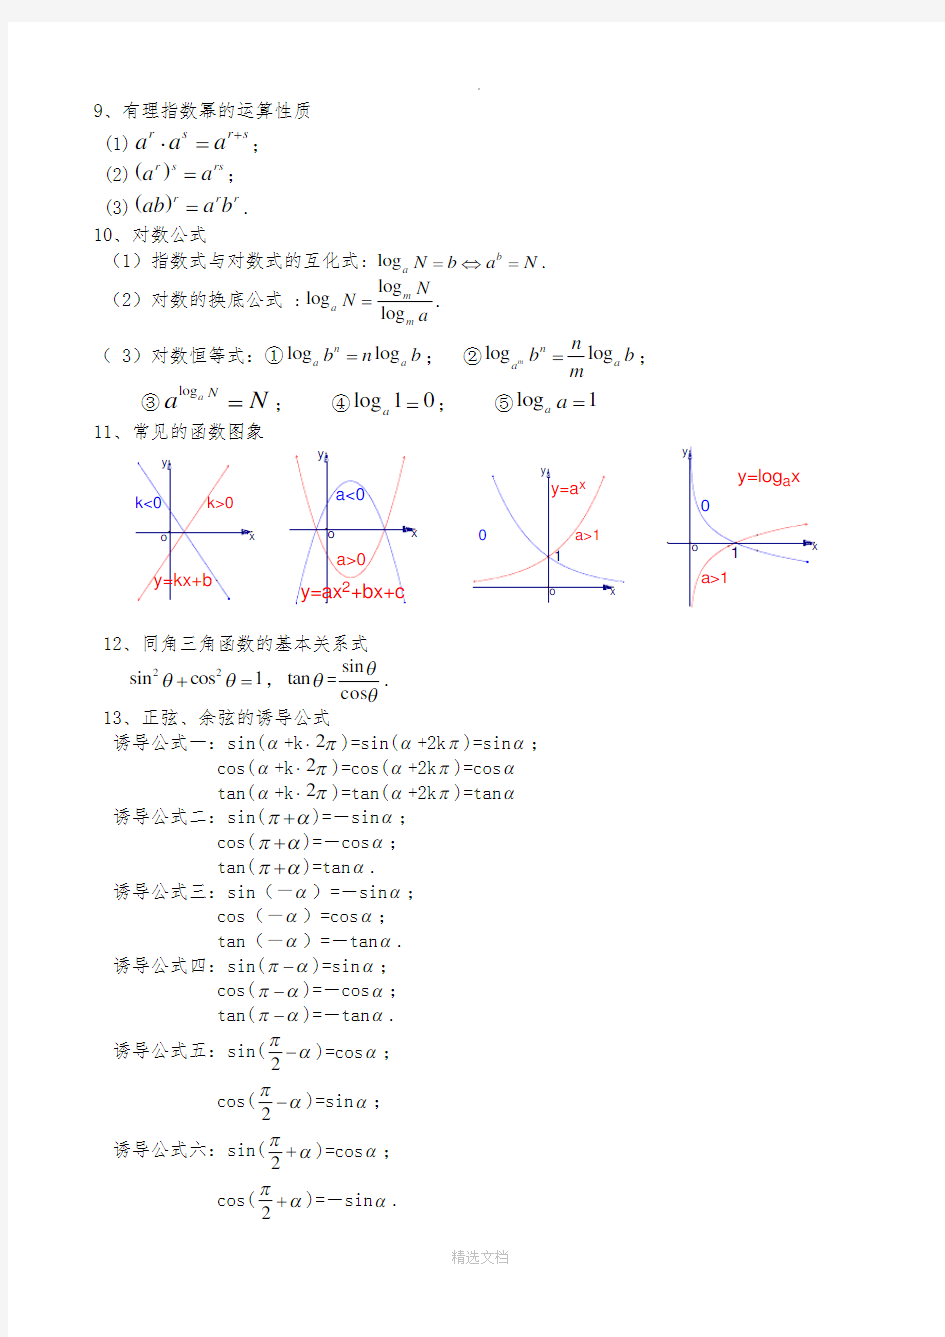 高中文科数学公式大全(精华版)92215